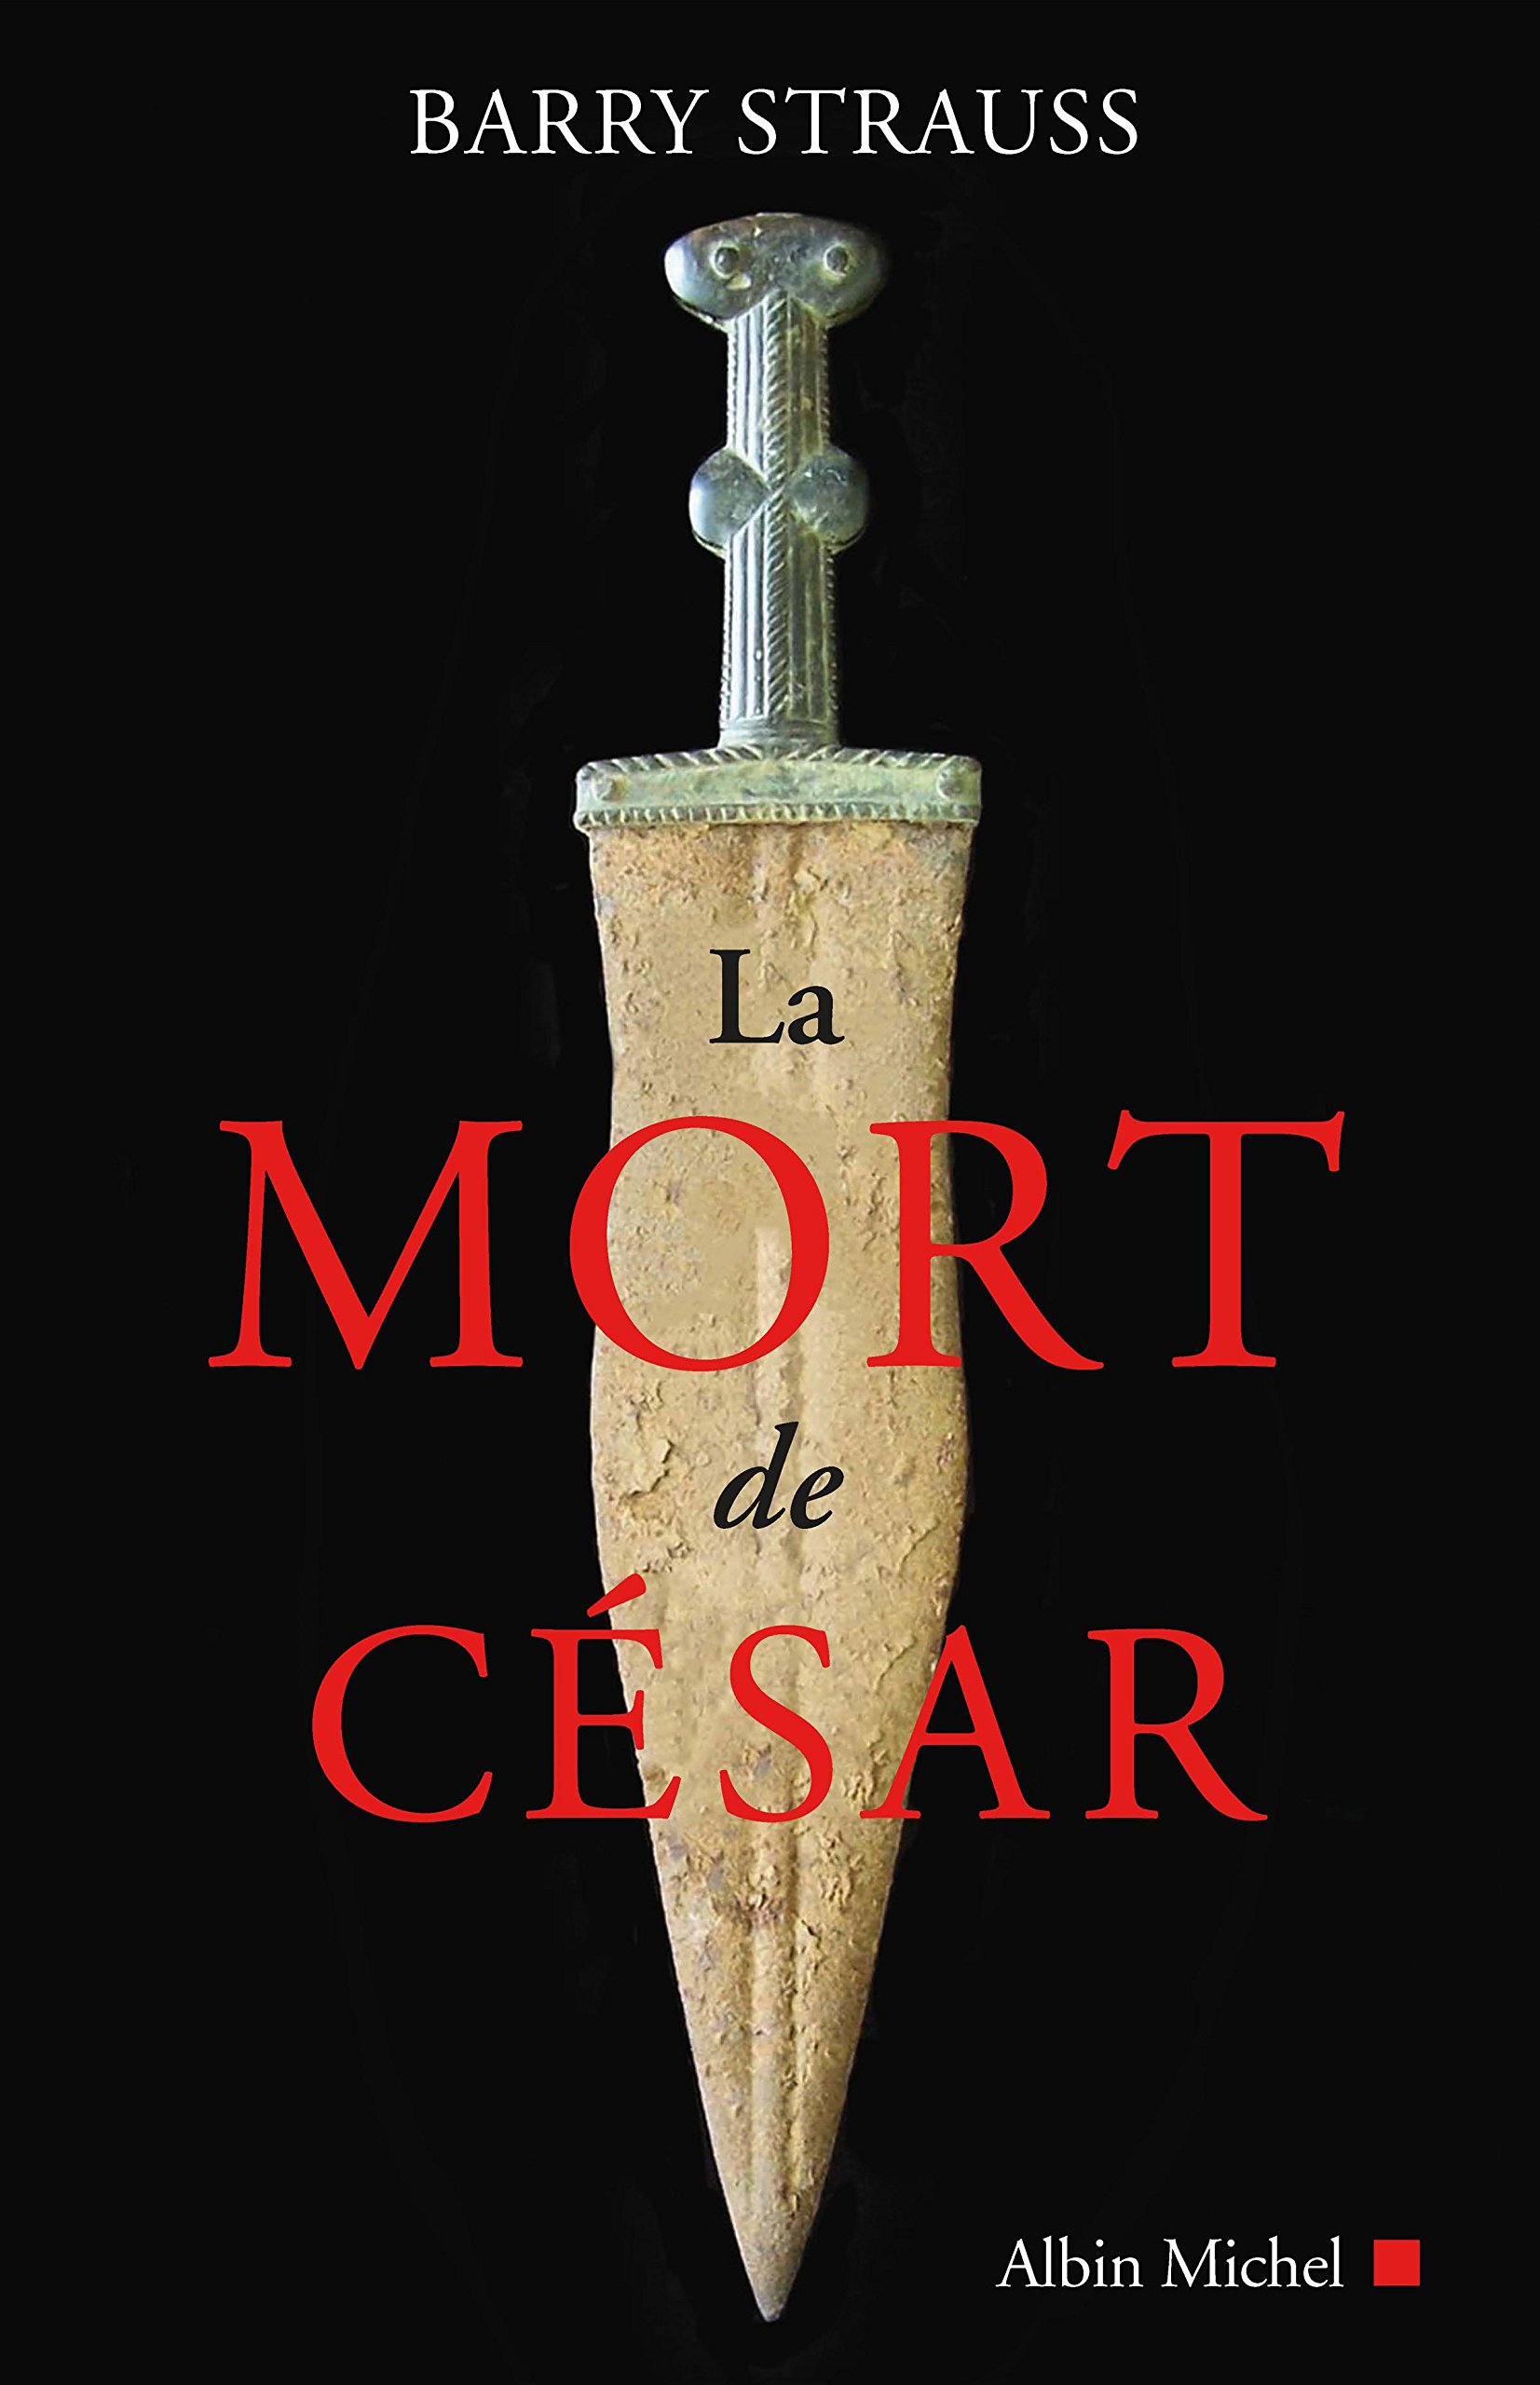 La mort de César, 2018, 352 p.